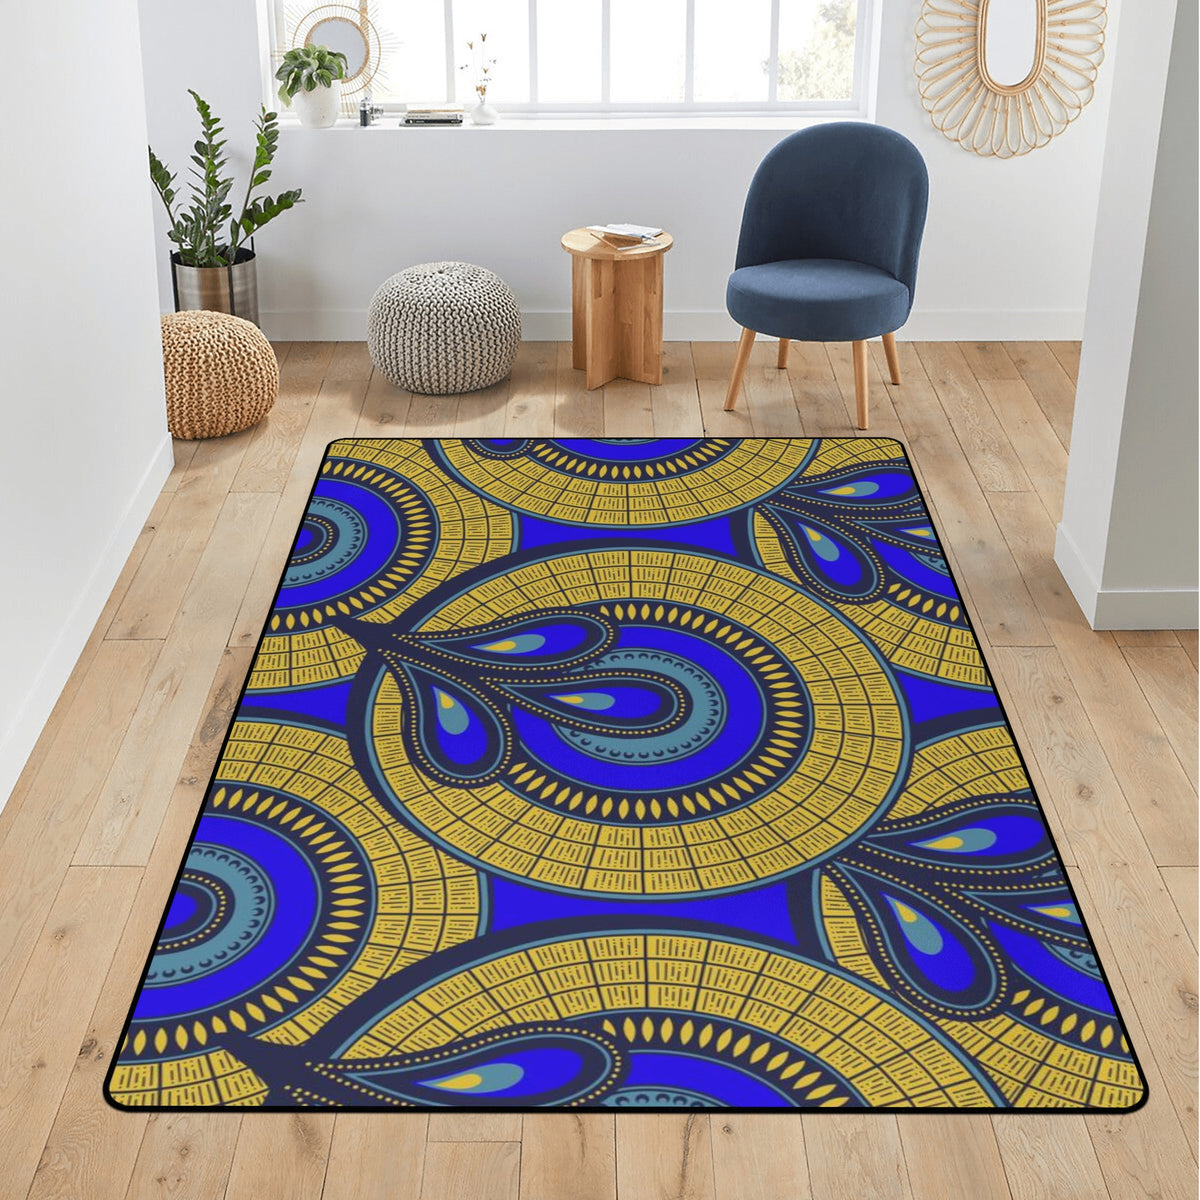 Living Room Carpet Rug in African Ankara Prints Pop